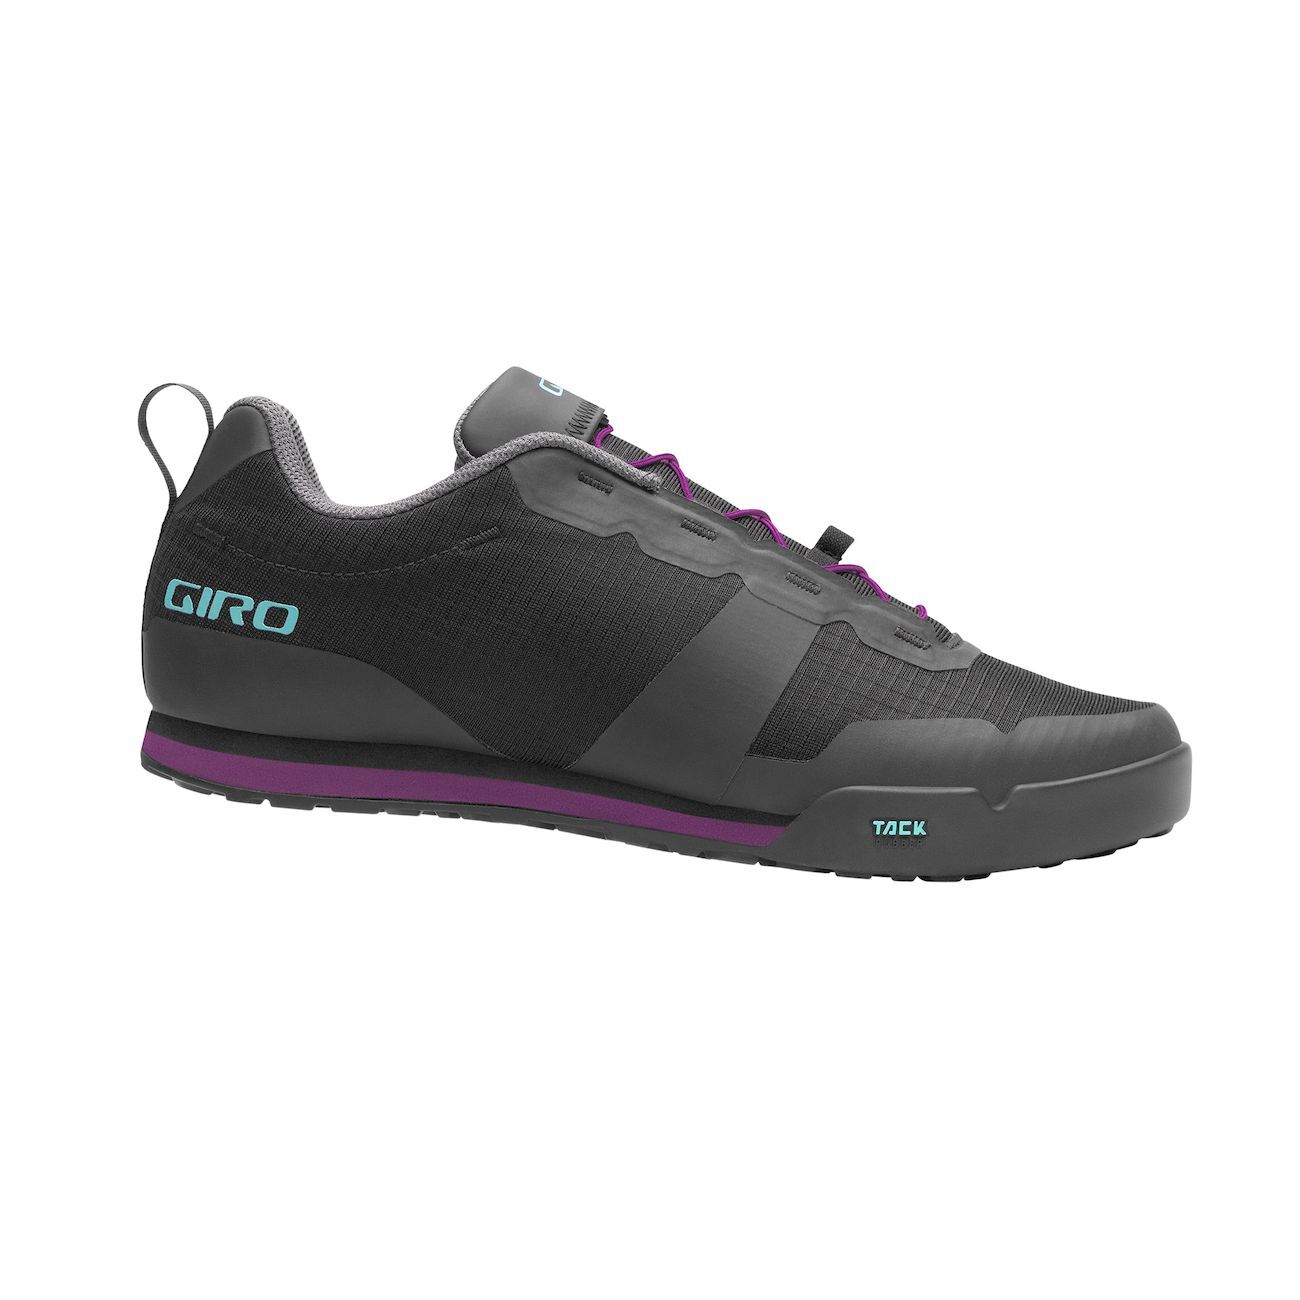 Giro Tracker Fastlace - Mountain Bike shoes - Women's